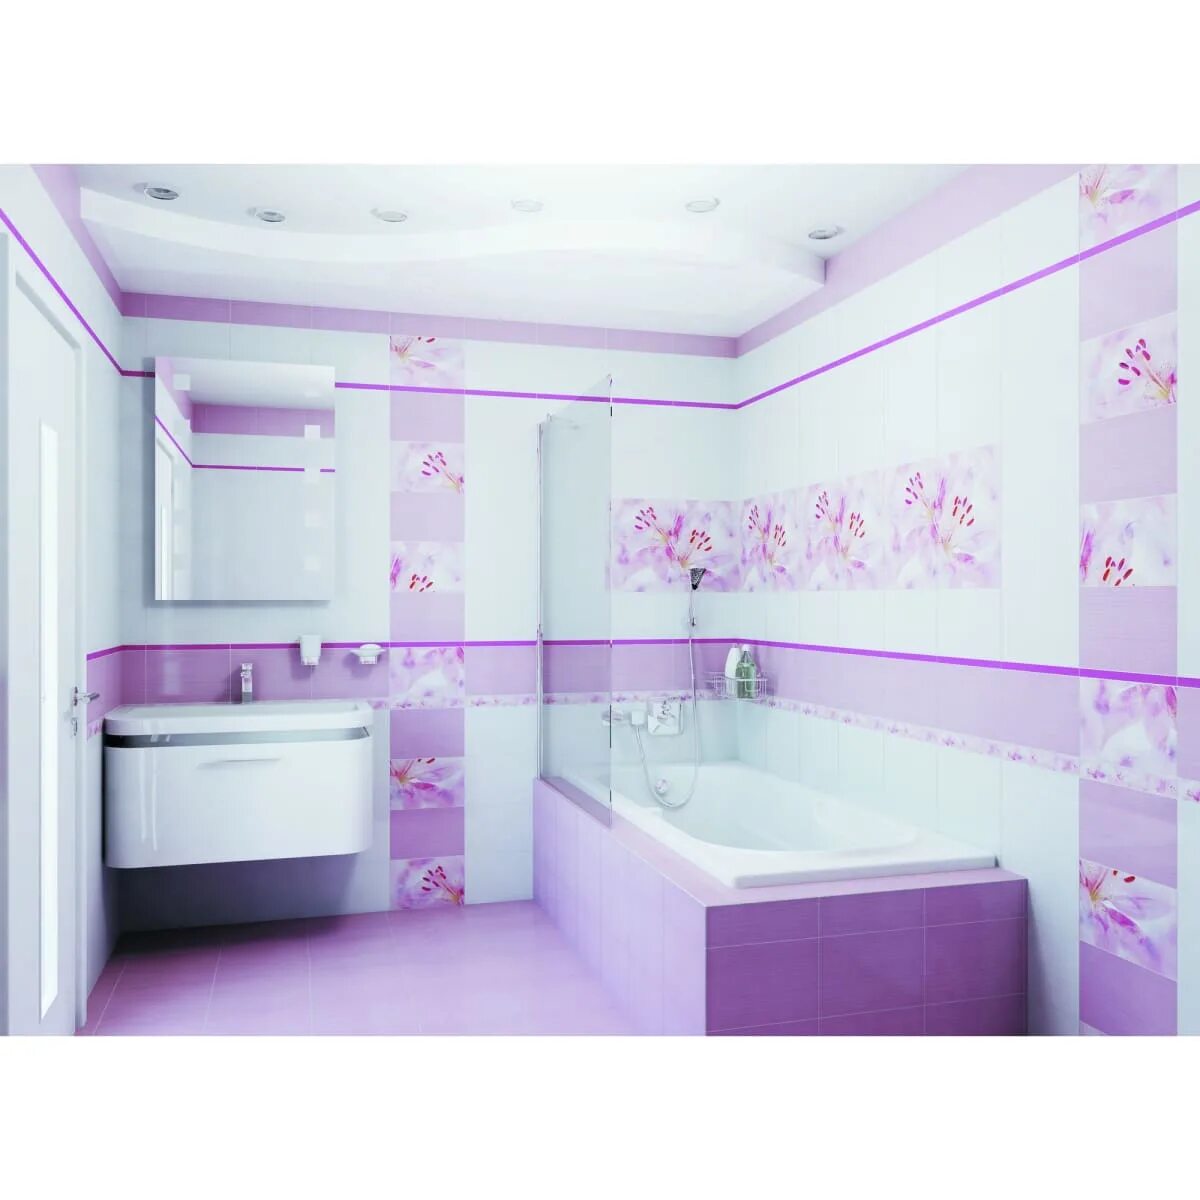 Плитка Лила Леруа Мерлен. Плитка Lily Дельта керамика. Плитка для ванной. Розовая ванная.